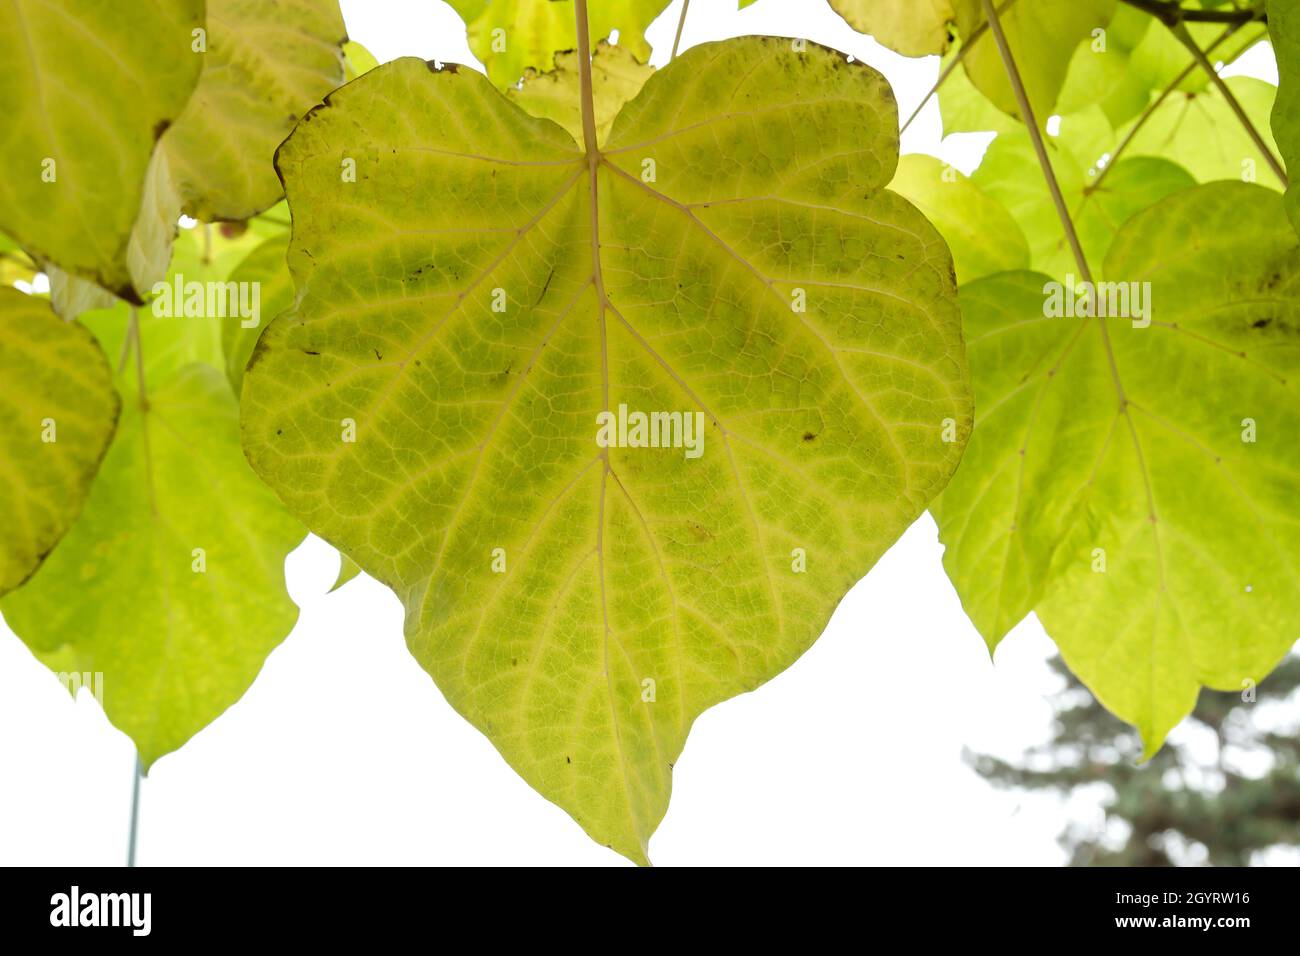 Catalpa bignonioides  Indian bean tree autumanl deciduous foliage Stock Photo